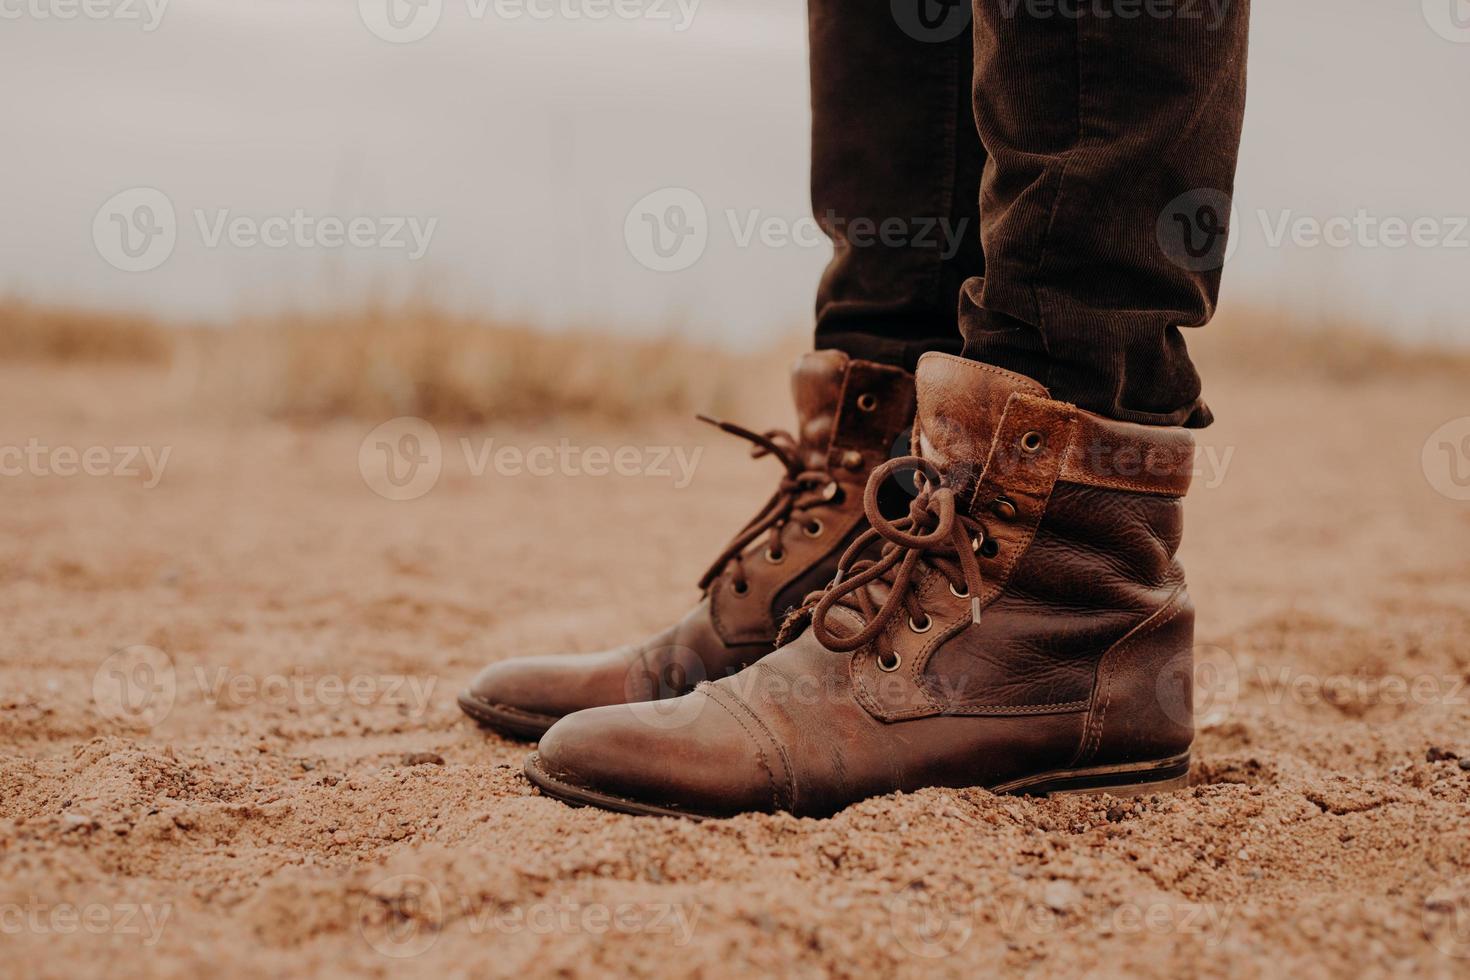 inquadratura laterale di un uomo con scarpe marroni arruffate su una superficie distesa. paio di stivali sulla sabbia. il maschio ha una passeggiata all'aperto con vecchie calzature. foto